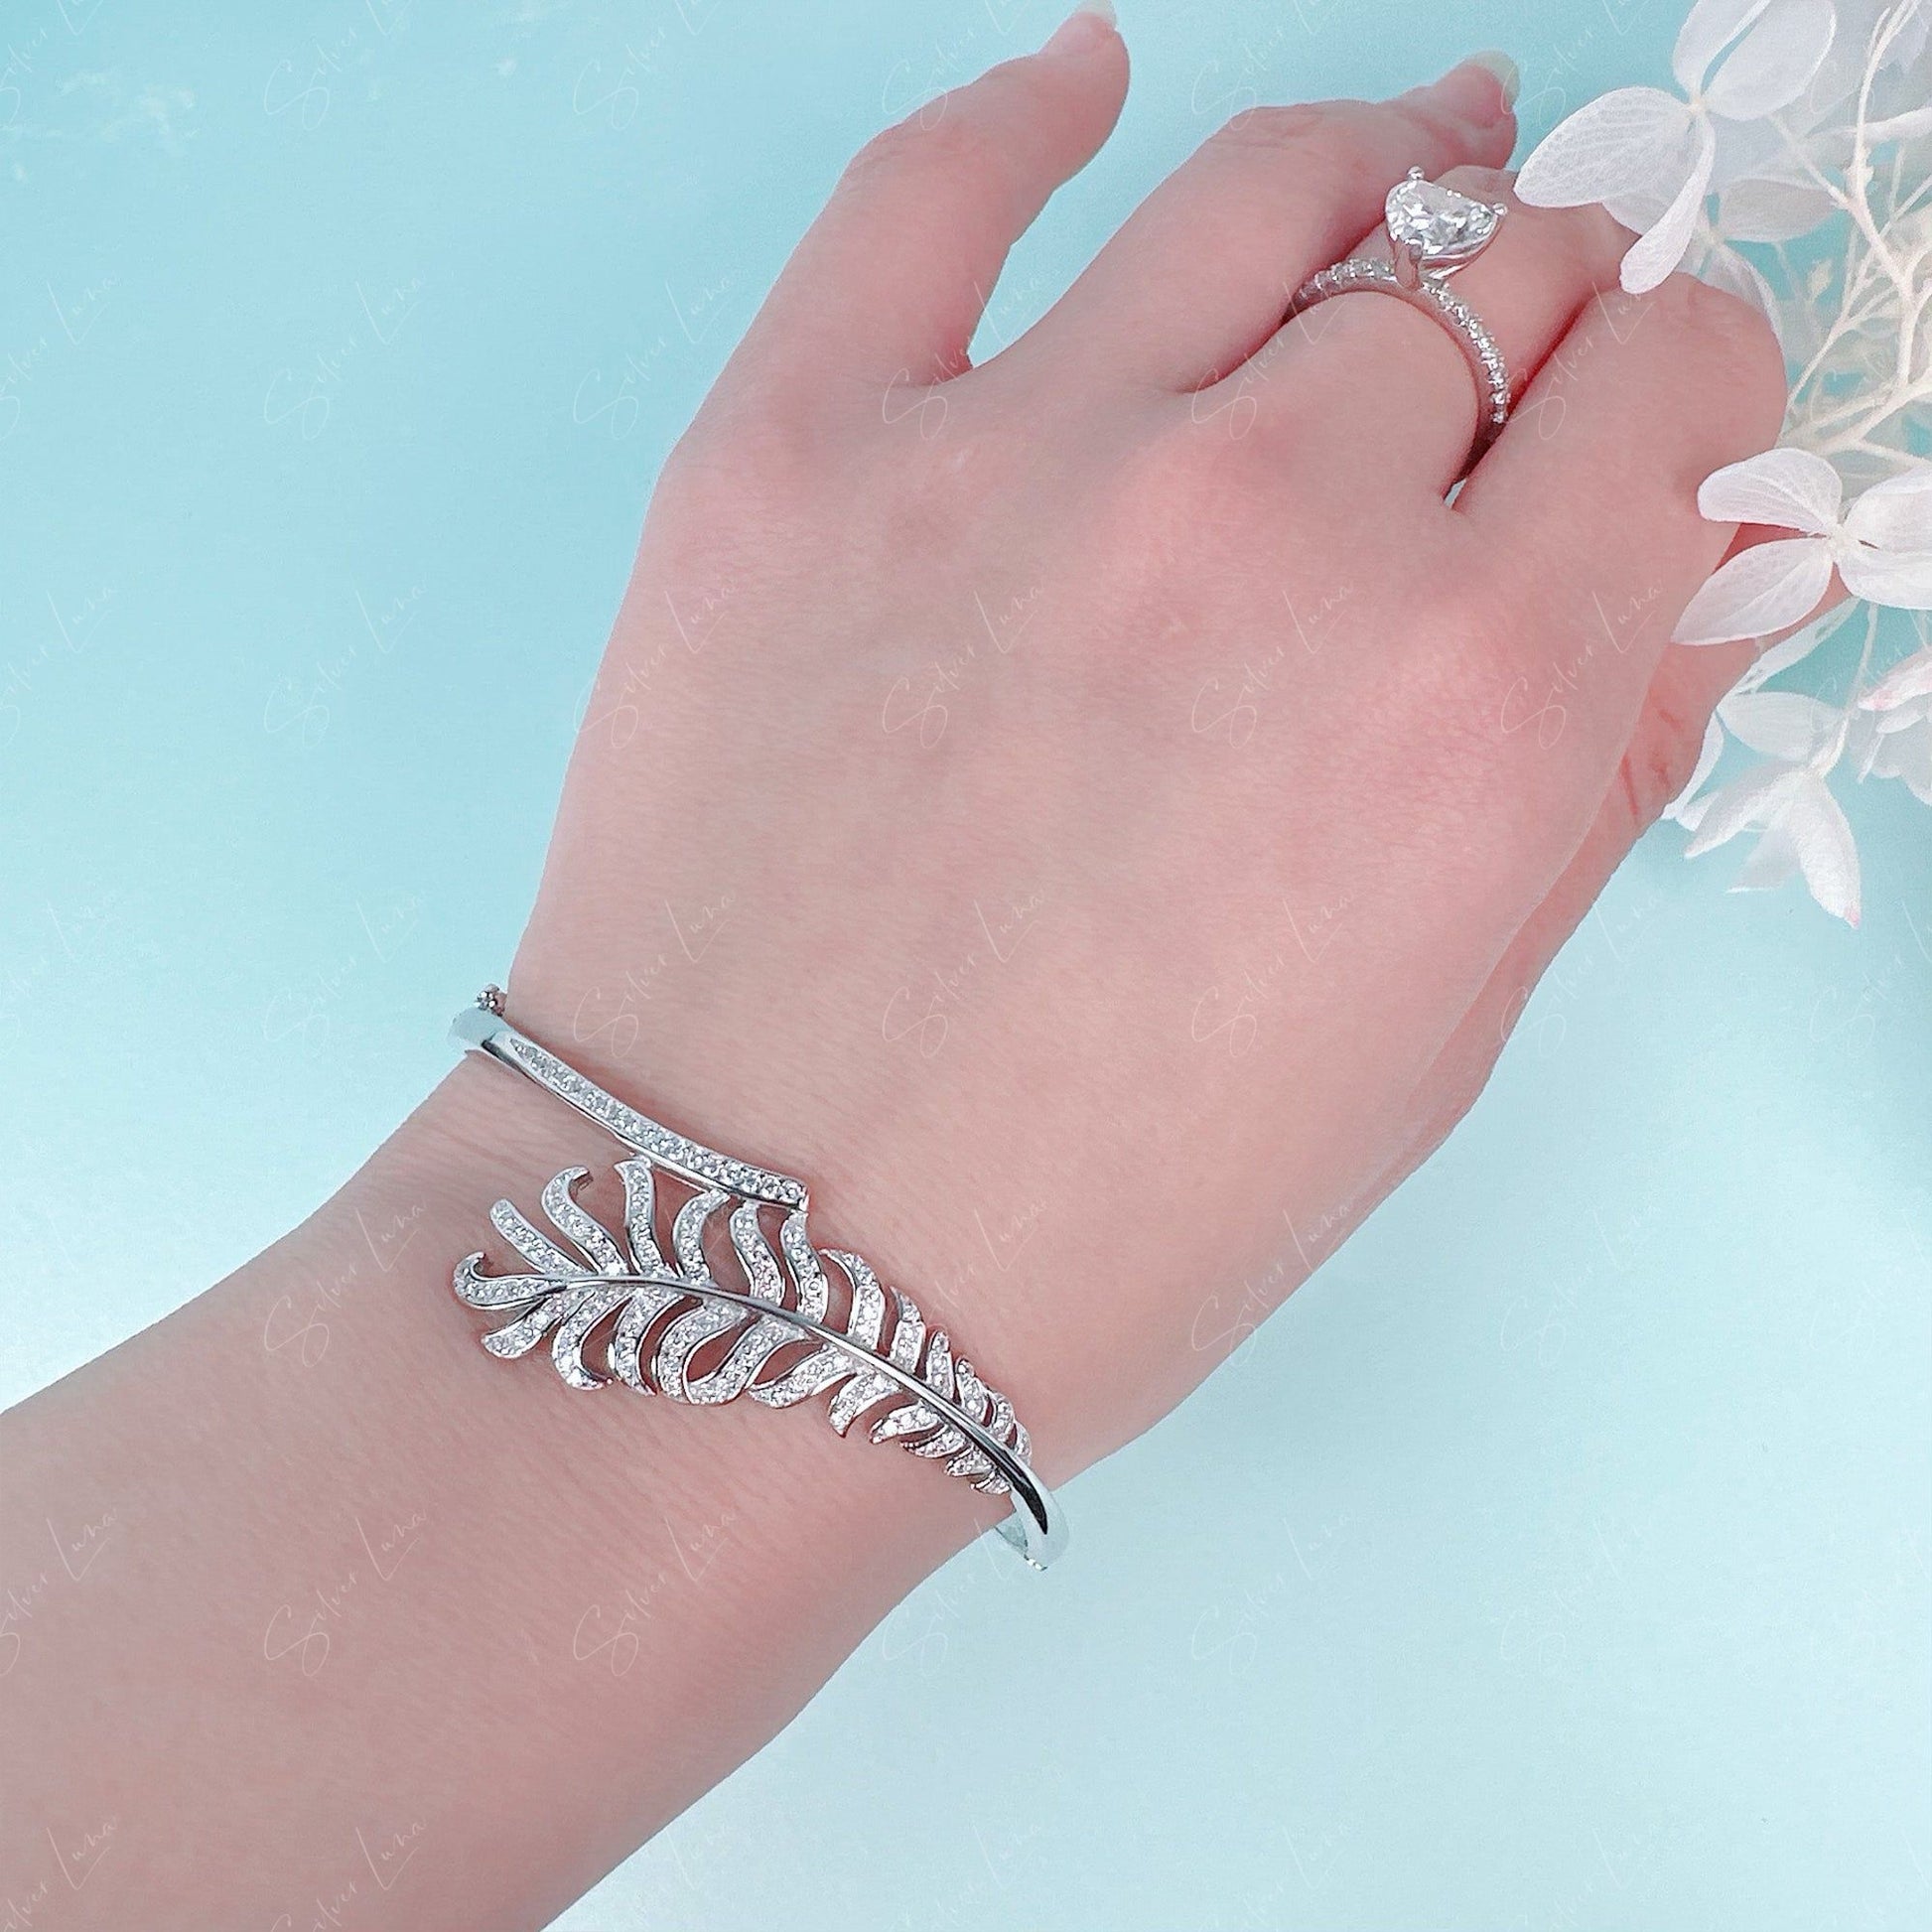 feature wrap silver bangle bracelet